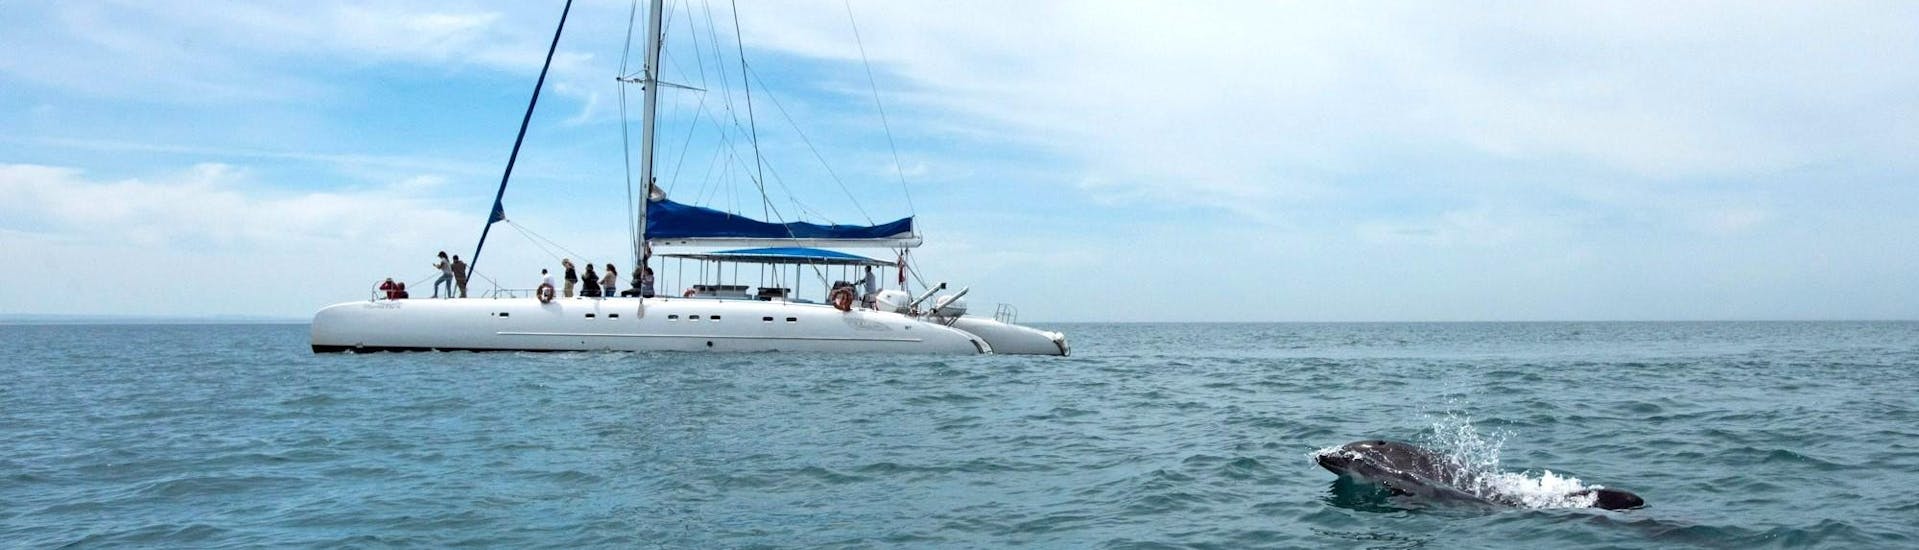 The catamaran of Vertigem Azul navigating in the Sado river.